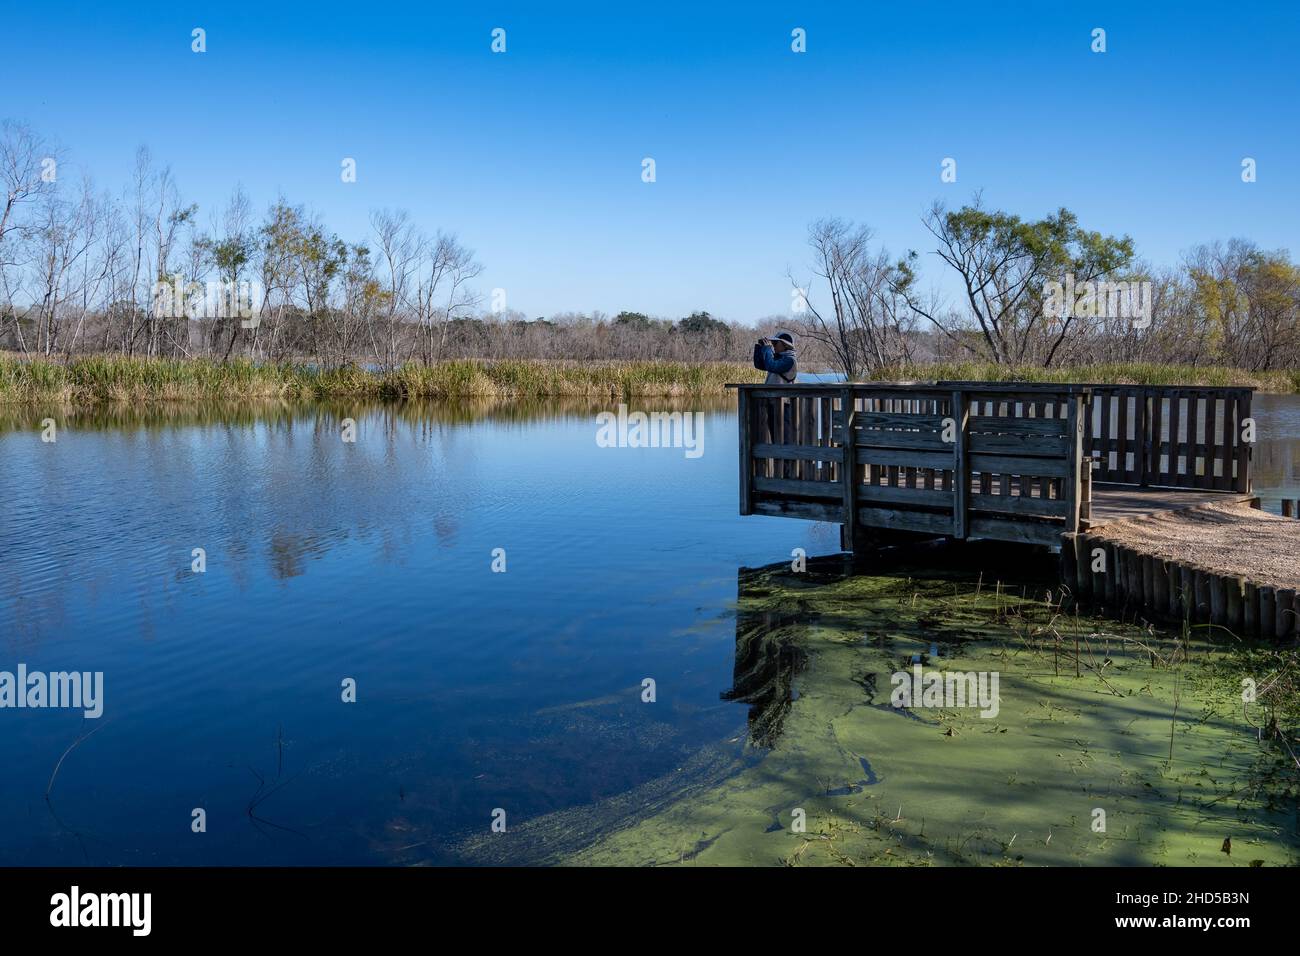 Un observateur d'oiseaux à la recherche d'oiseaux sur une terrasse en bois au bord du lac.Parc régional de Brazos Bend.Needville, Texas, États-Unis. Banque D'Images